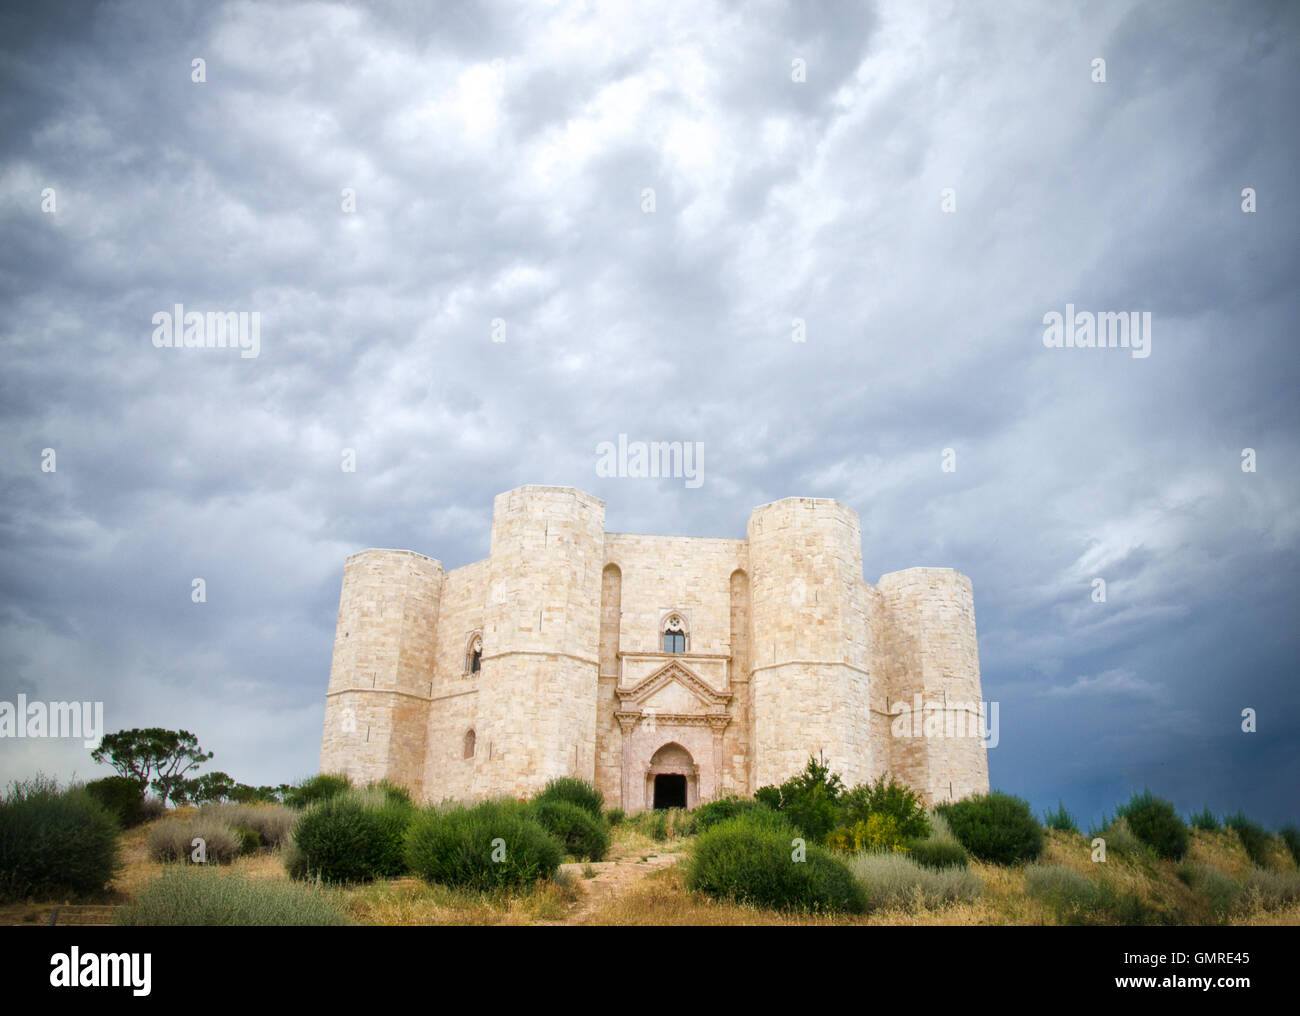 Castel del Monte, Andria, Apulia - castle dramatic cloudy sky Stock Photo